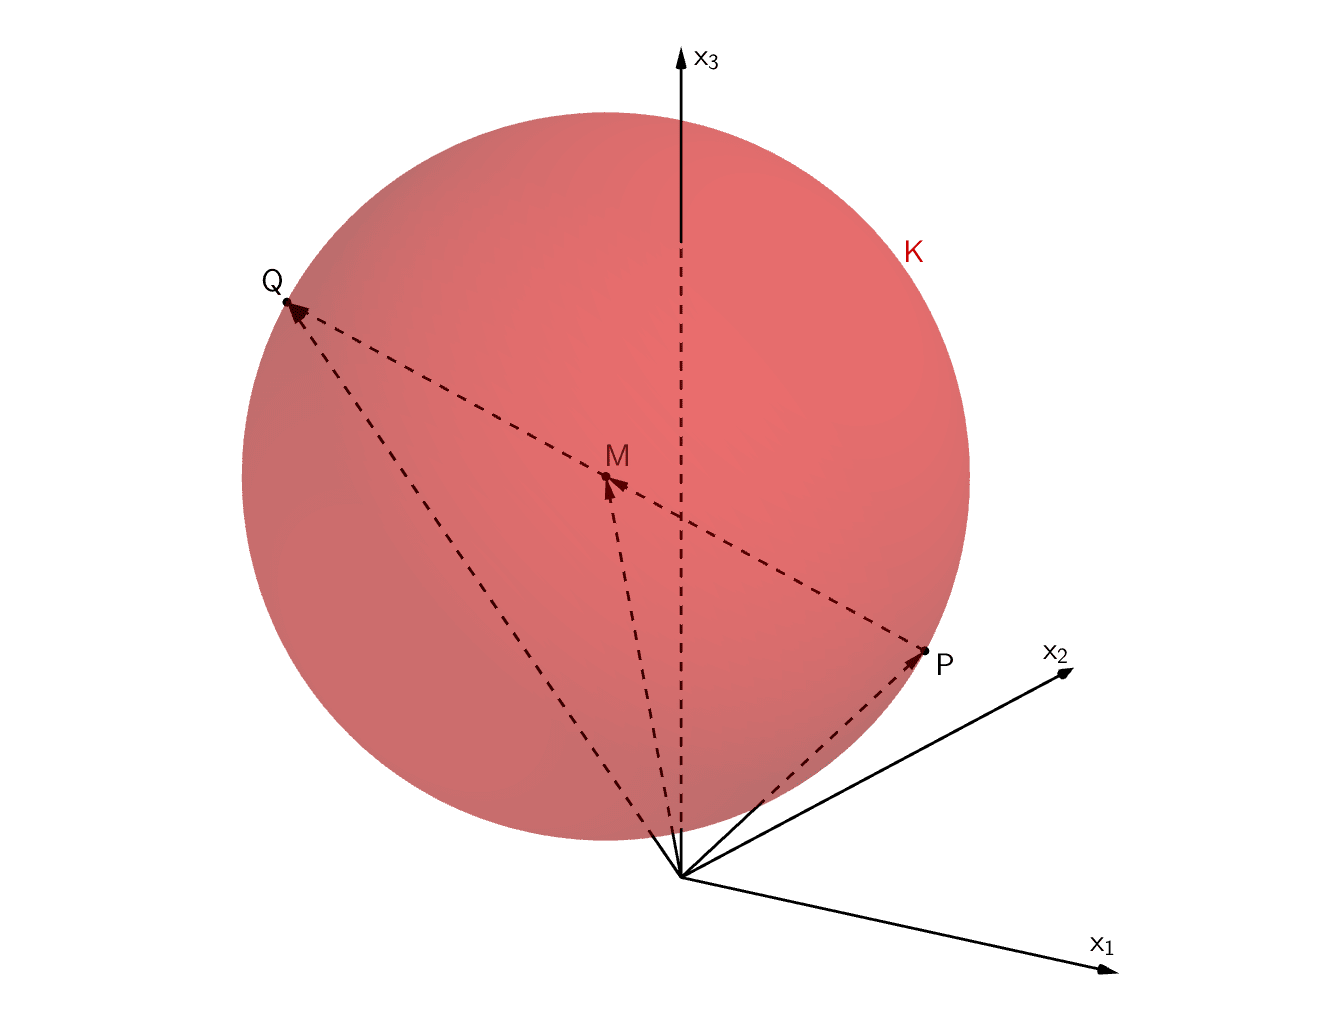 Kugel K mit Mittelpunkt M, P ∈ K, Q ∈ K